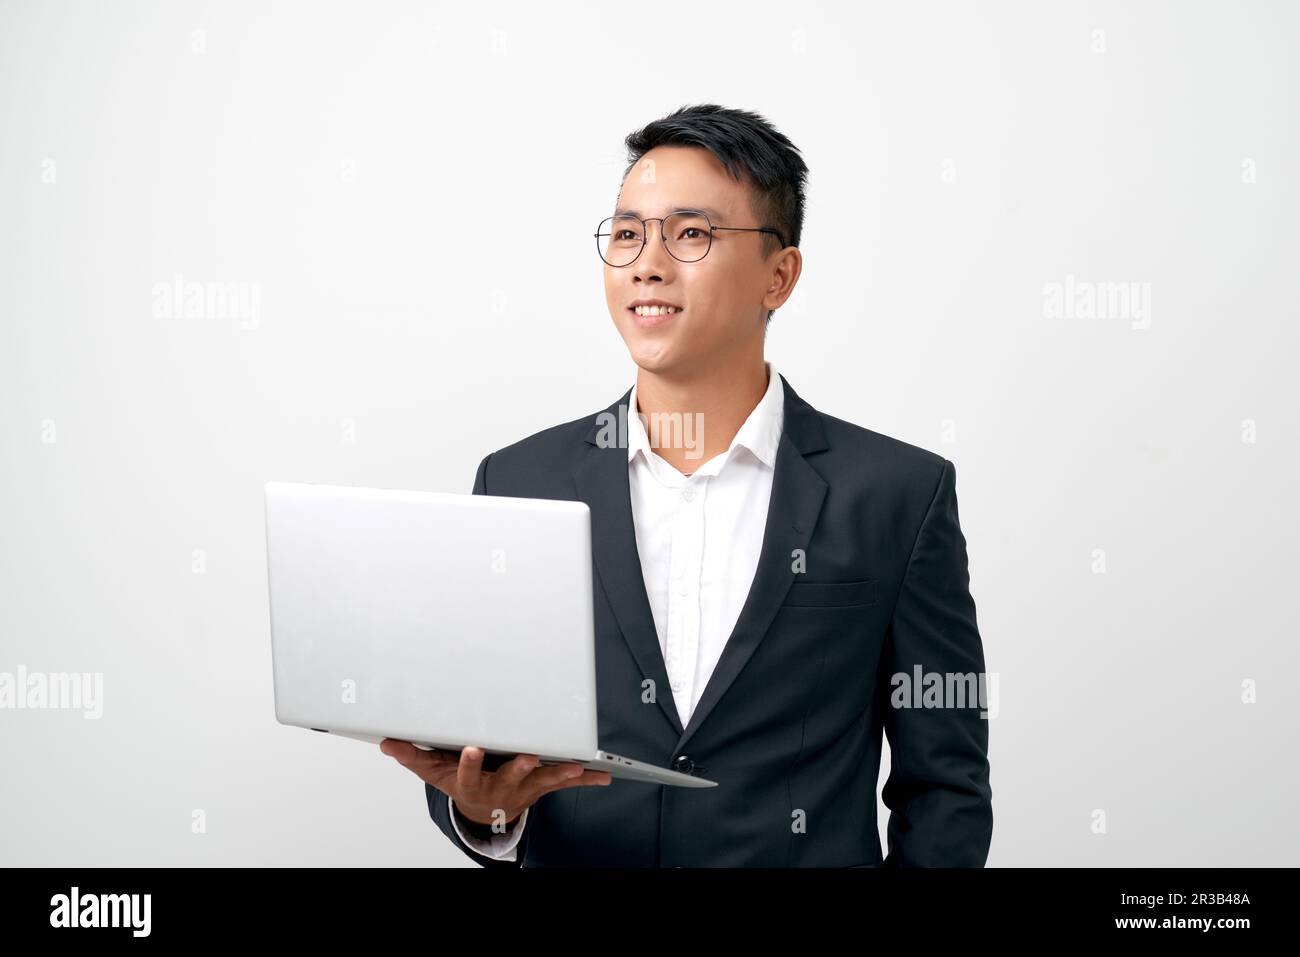 Selbstbewusster junger gutaussehender Mann im schwarzen Anzug, der den grauen Laptop offen hält und beim Stehen lächelt Stockfoto